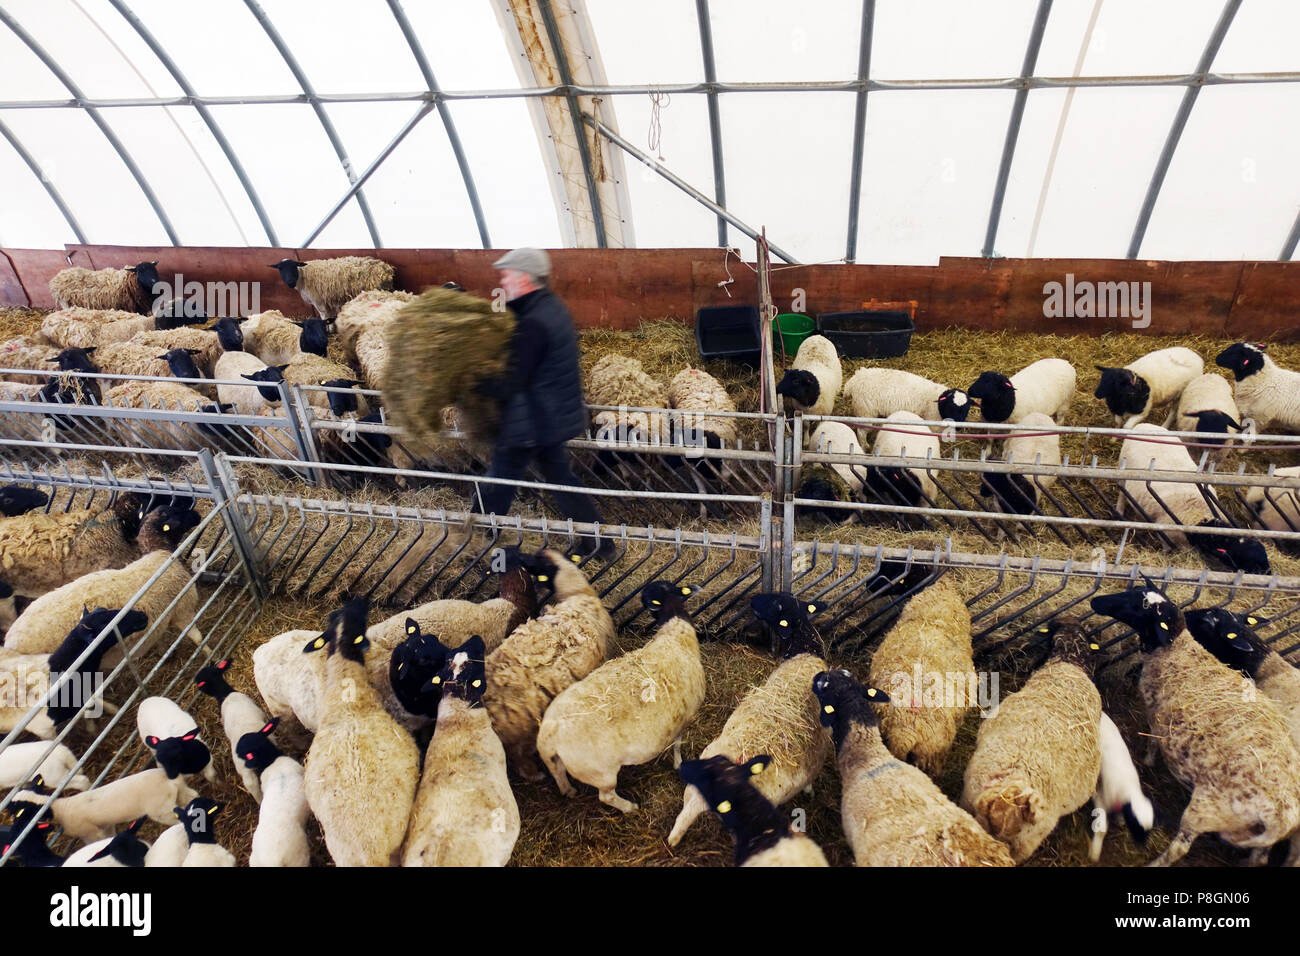 Kaetwin nouveau, l'Allemagne, l'agriculteur nourrit ses brebis Dorper dans l'étable avec hay Banque D'Images